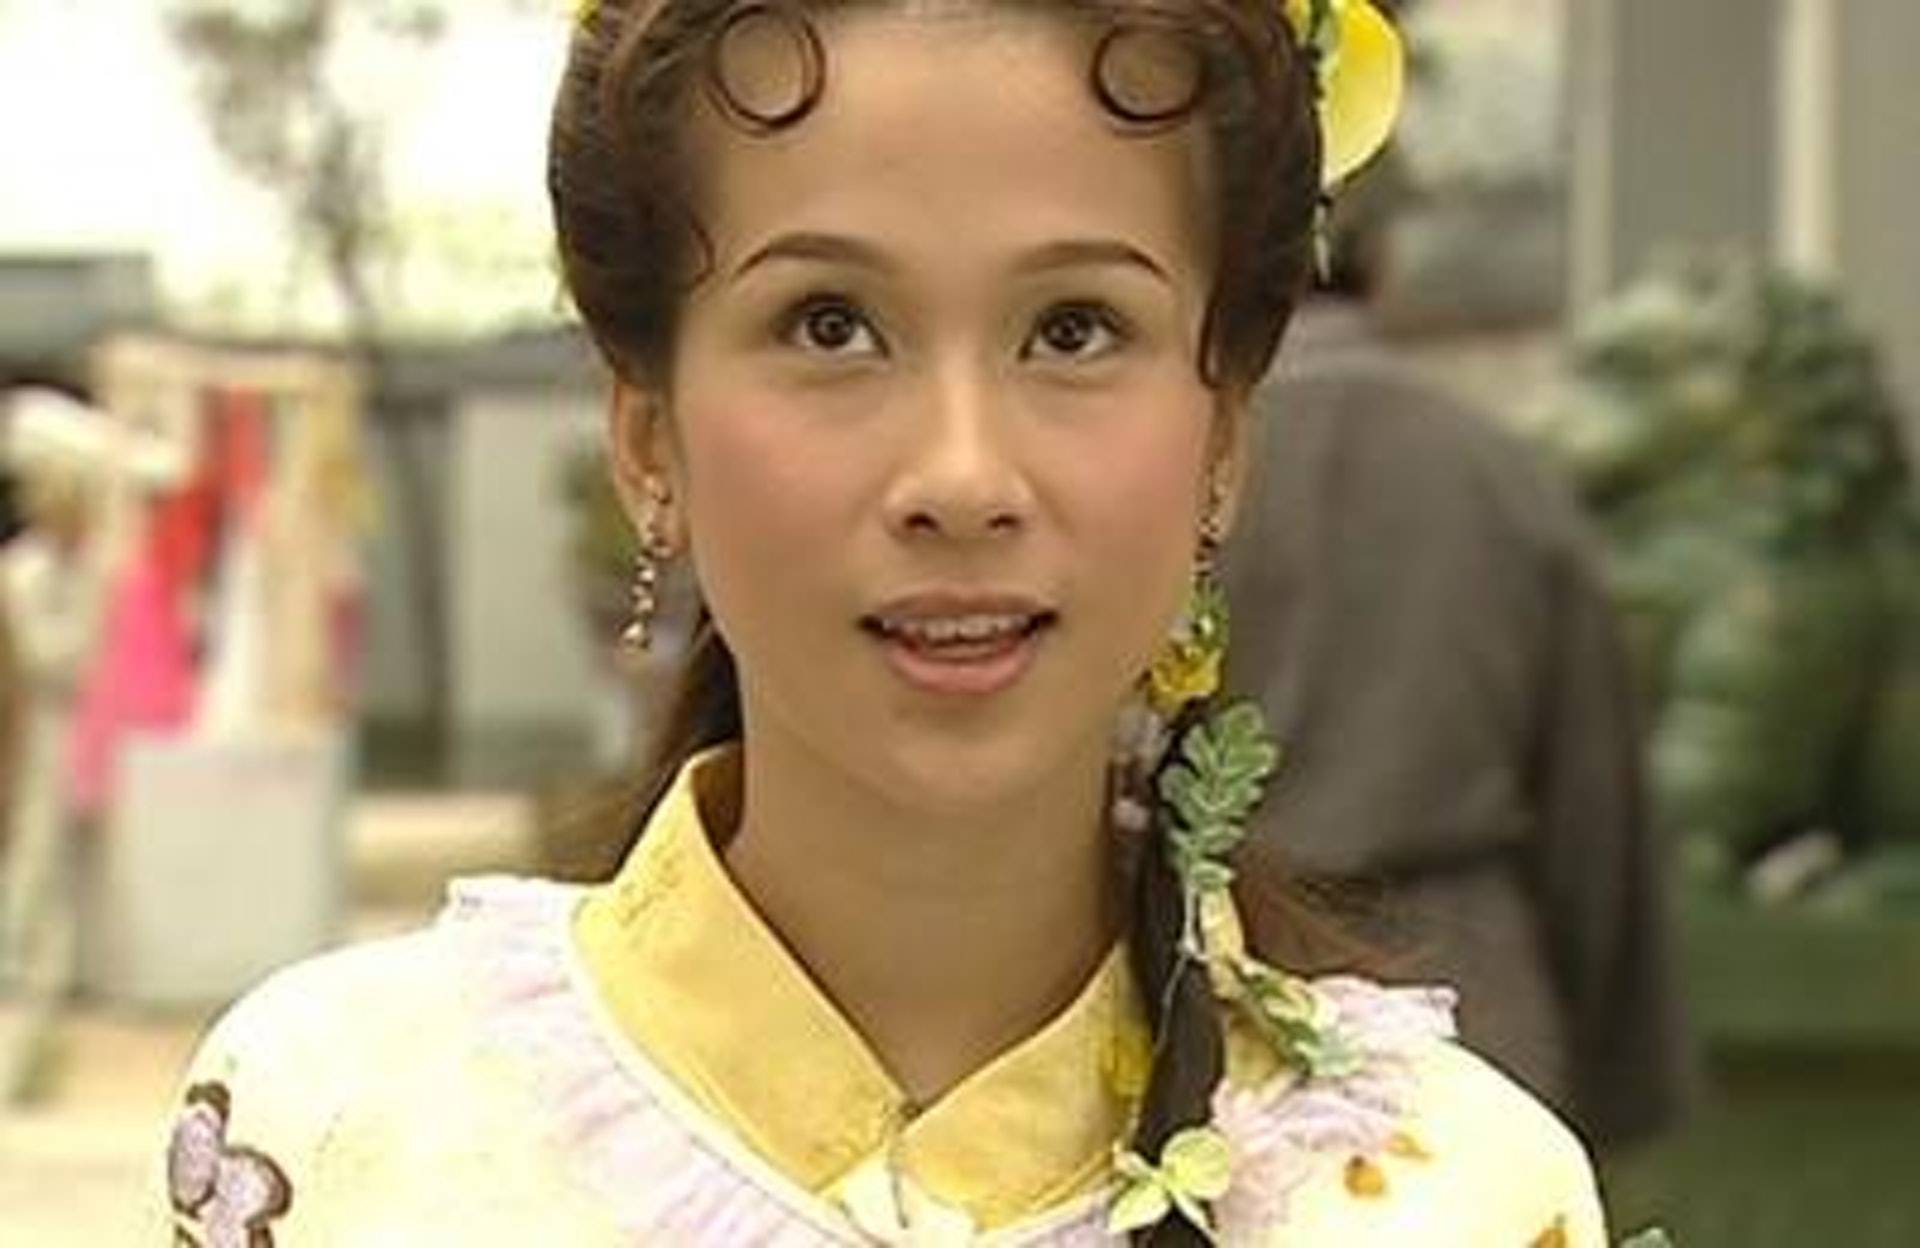 文頌嫻 文頌嫻於2003年《天子尋龍》中飾演「碧瑤仙子」